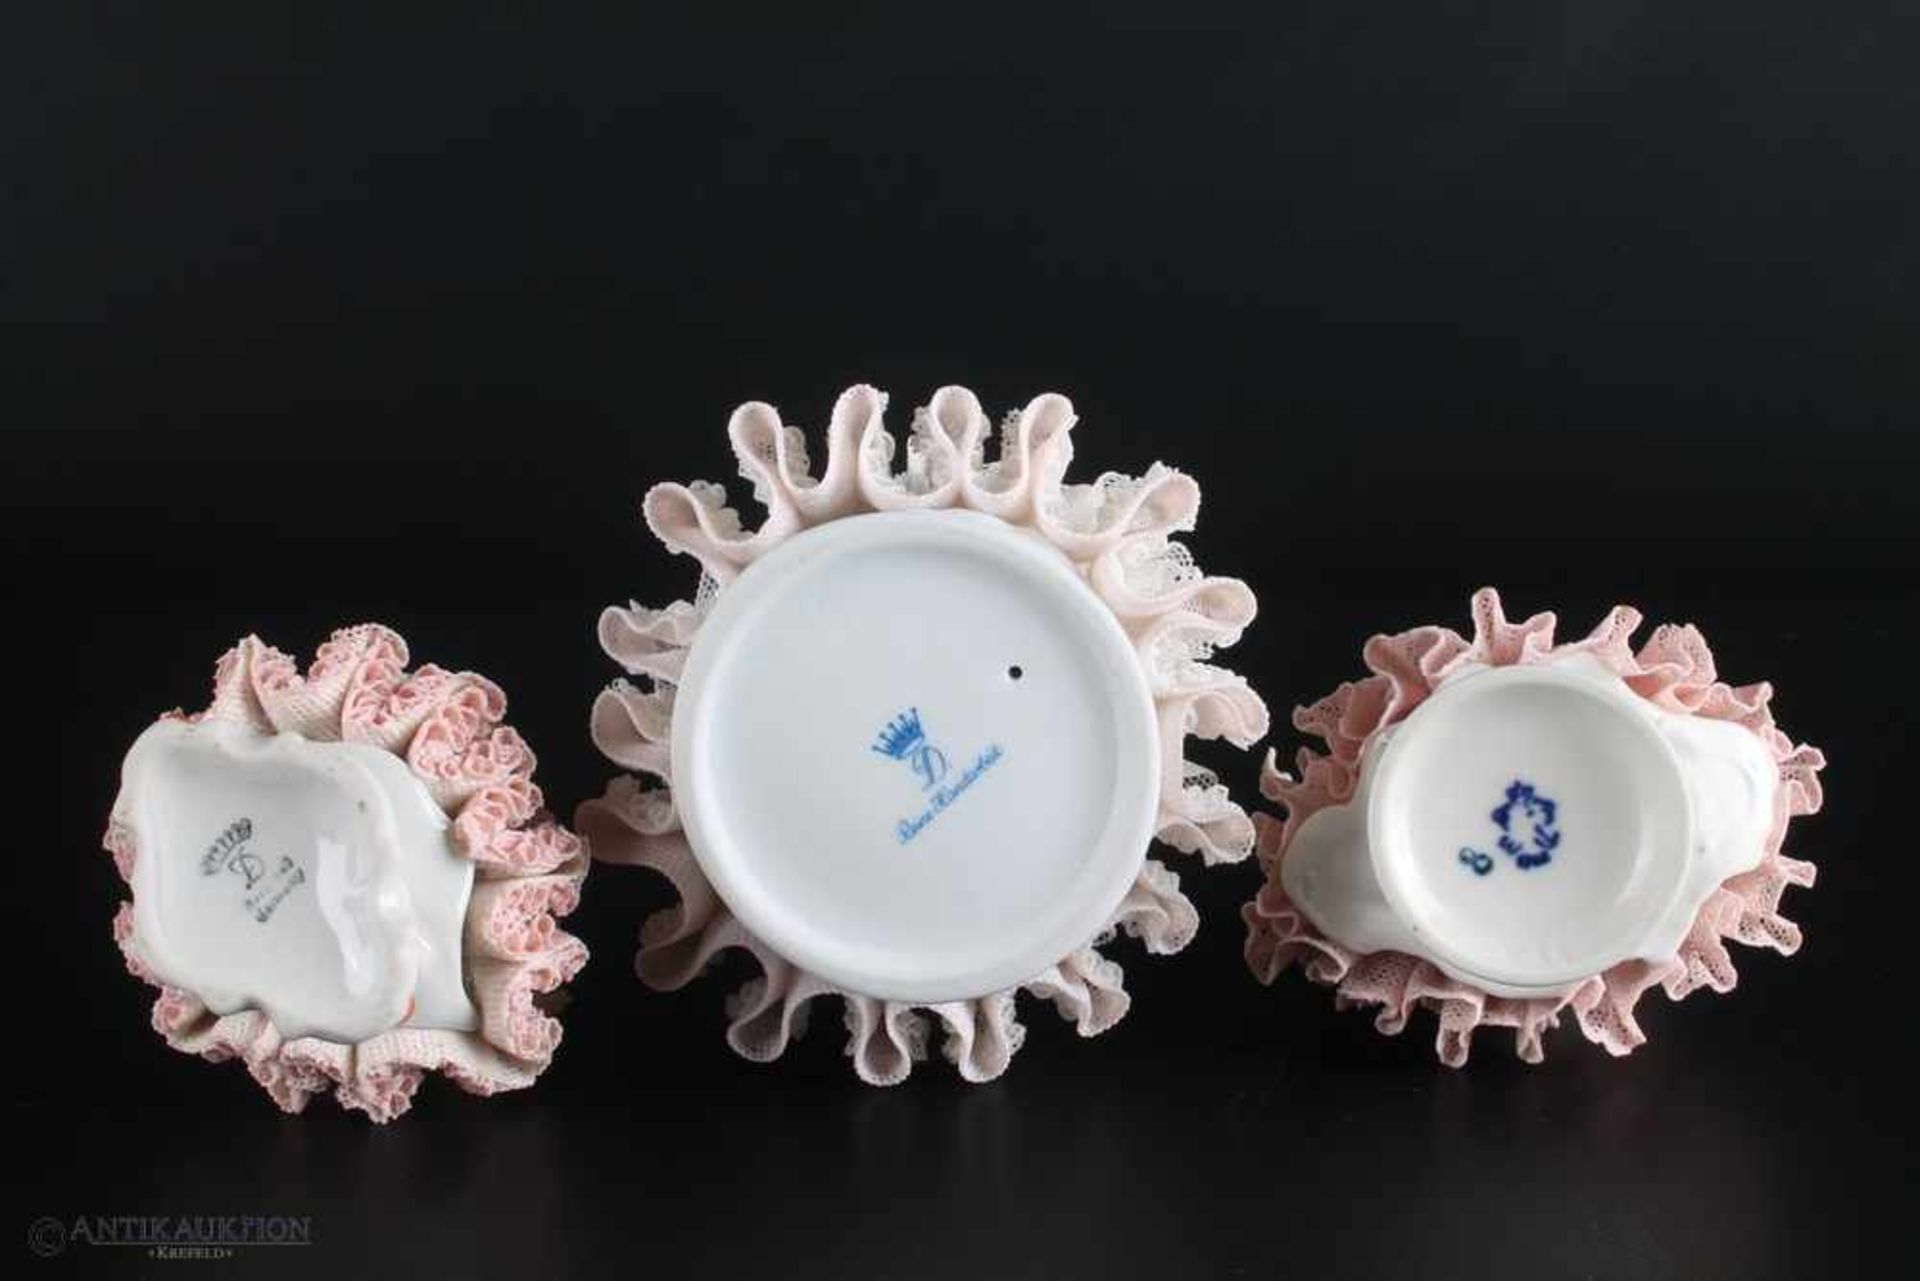 3 Dresdner Porzellanfiguren in Rüschenkleid,am Boden gemarkt, diverse Marken, Höhe 15 cm und - Bild 2 aus 2